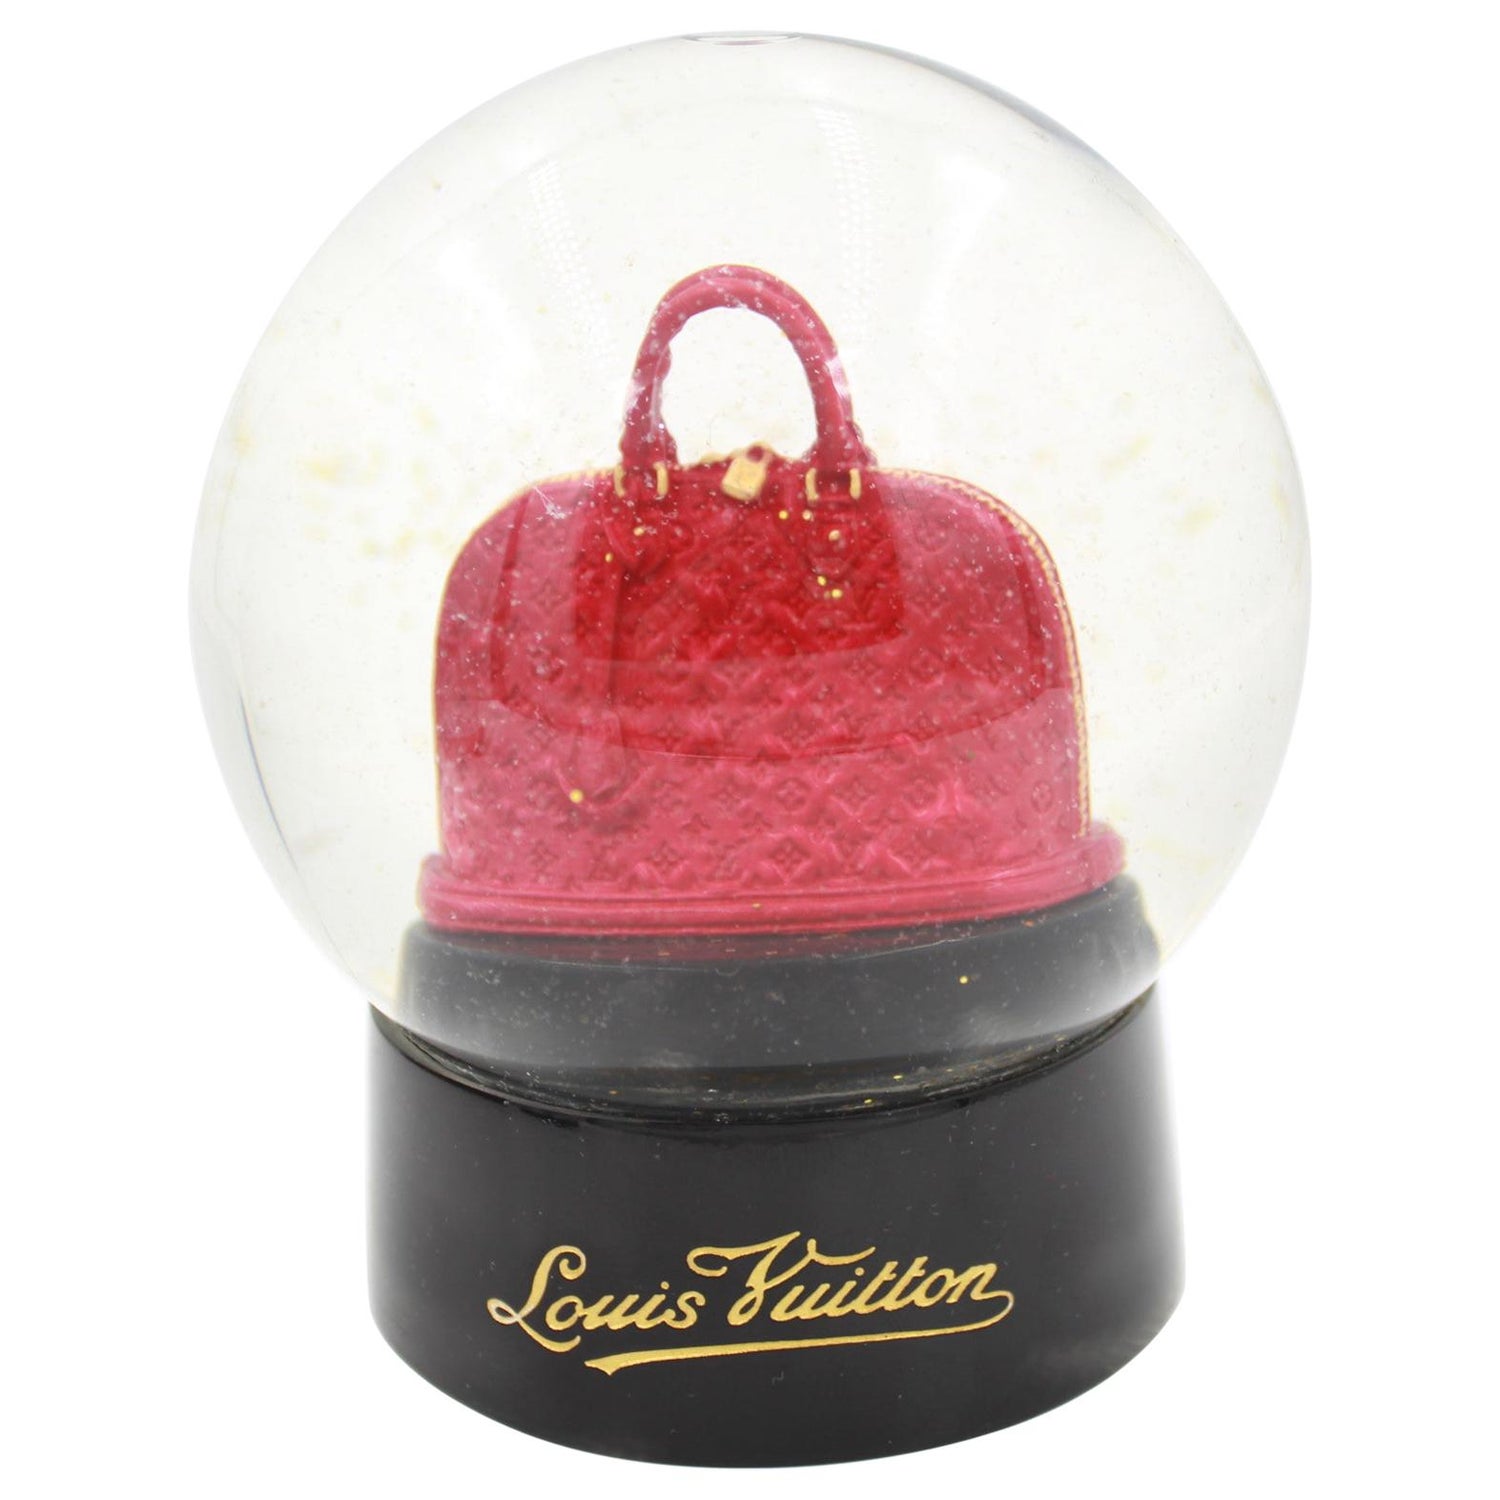 Authentic Louis Vuitton Air Balloon Snow Globe Dome 2013 VIP Gift Item  w/Box